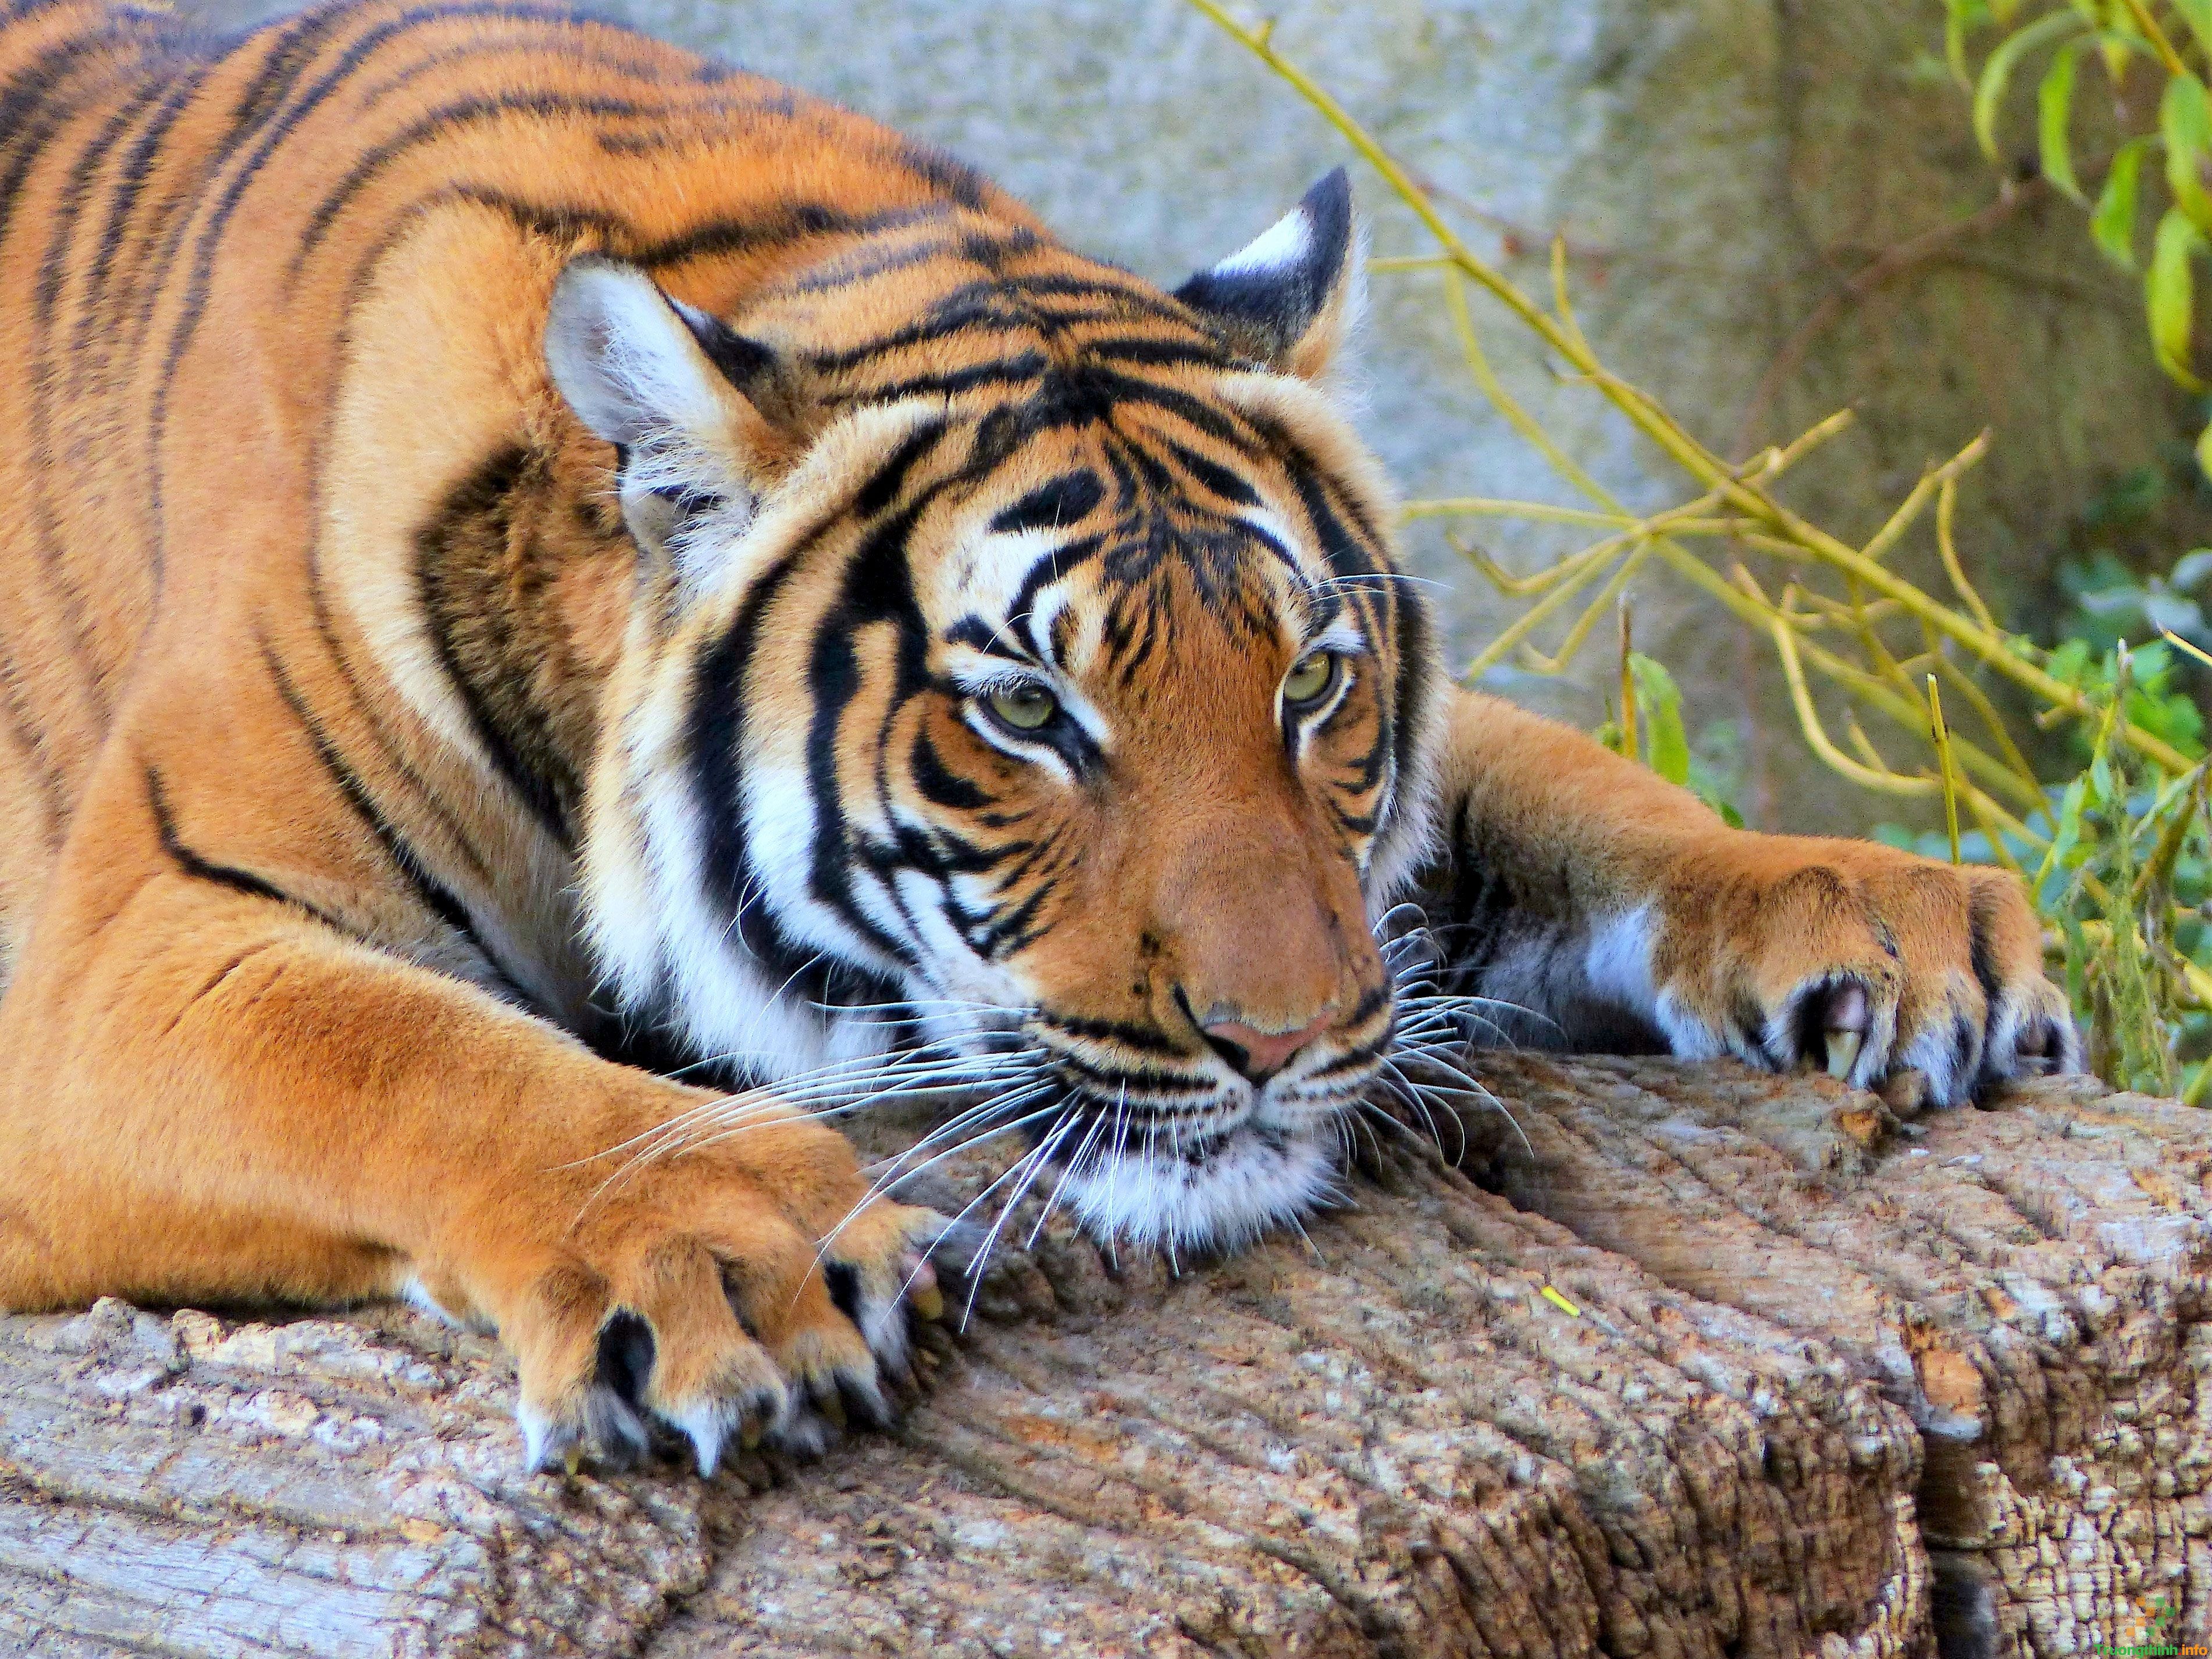 Con hổ đã từ lâu được biết đến là một trong những loài động vật quý hiếm và đáng yêu nhất thế giới. Hãy thưởng thức những hình ảnh con hổ dễ thương này và tận hưởng niềm đam mê với thiên nhiên.